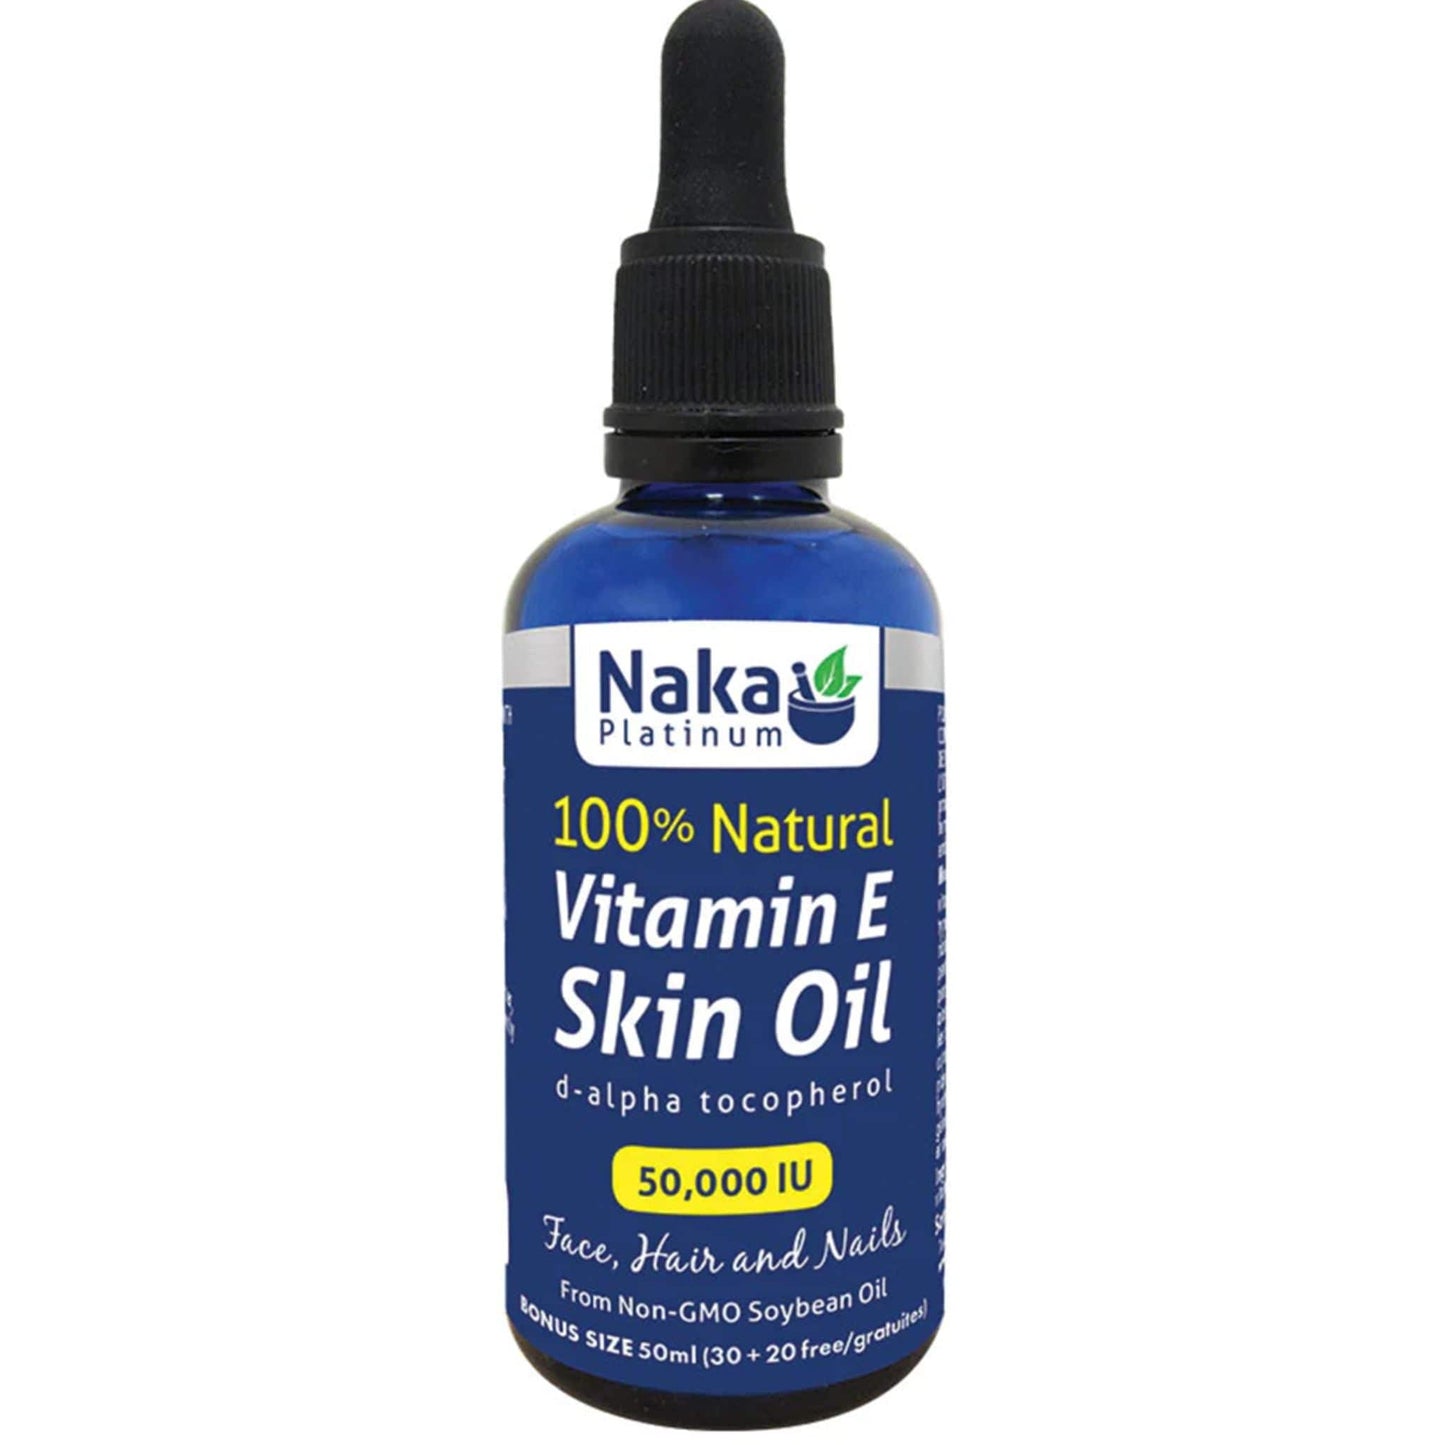 Naka Platinum 100% Natural Vitamin E Skin Oil 50,000 IU, 50ml